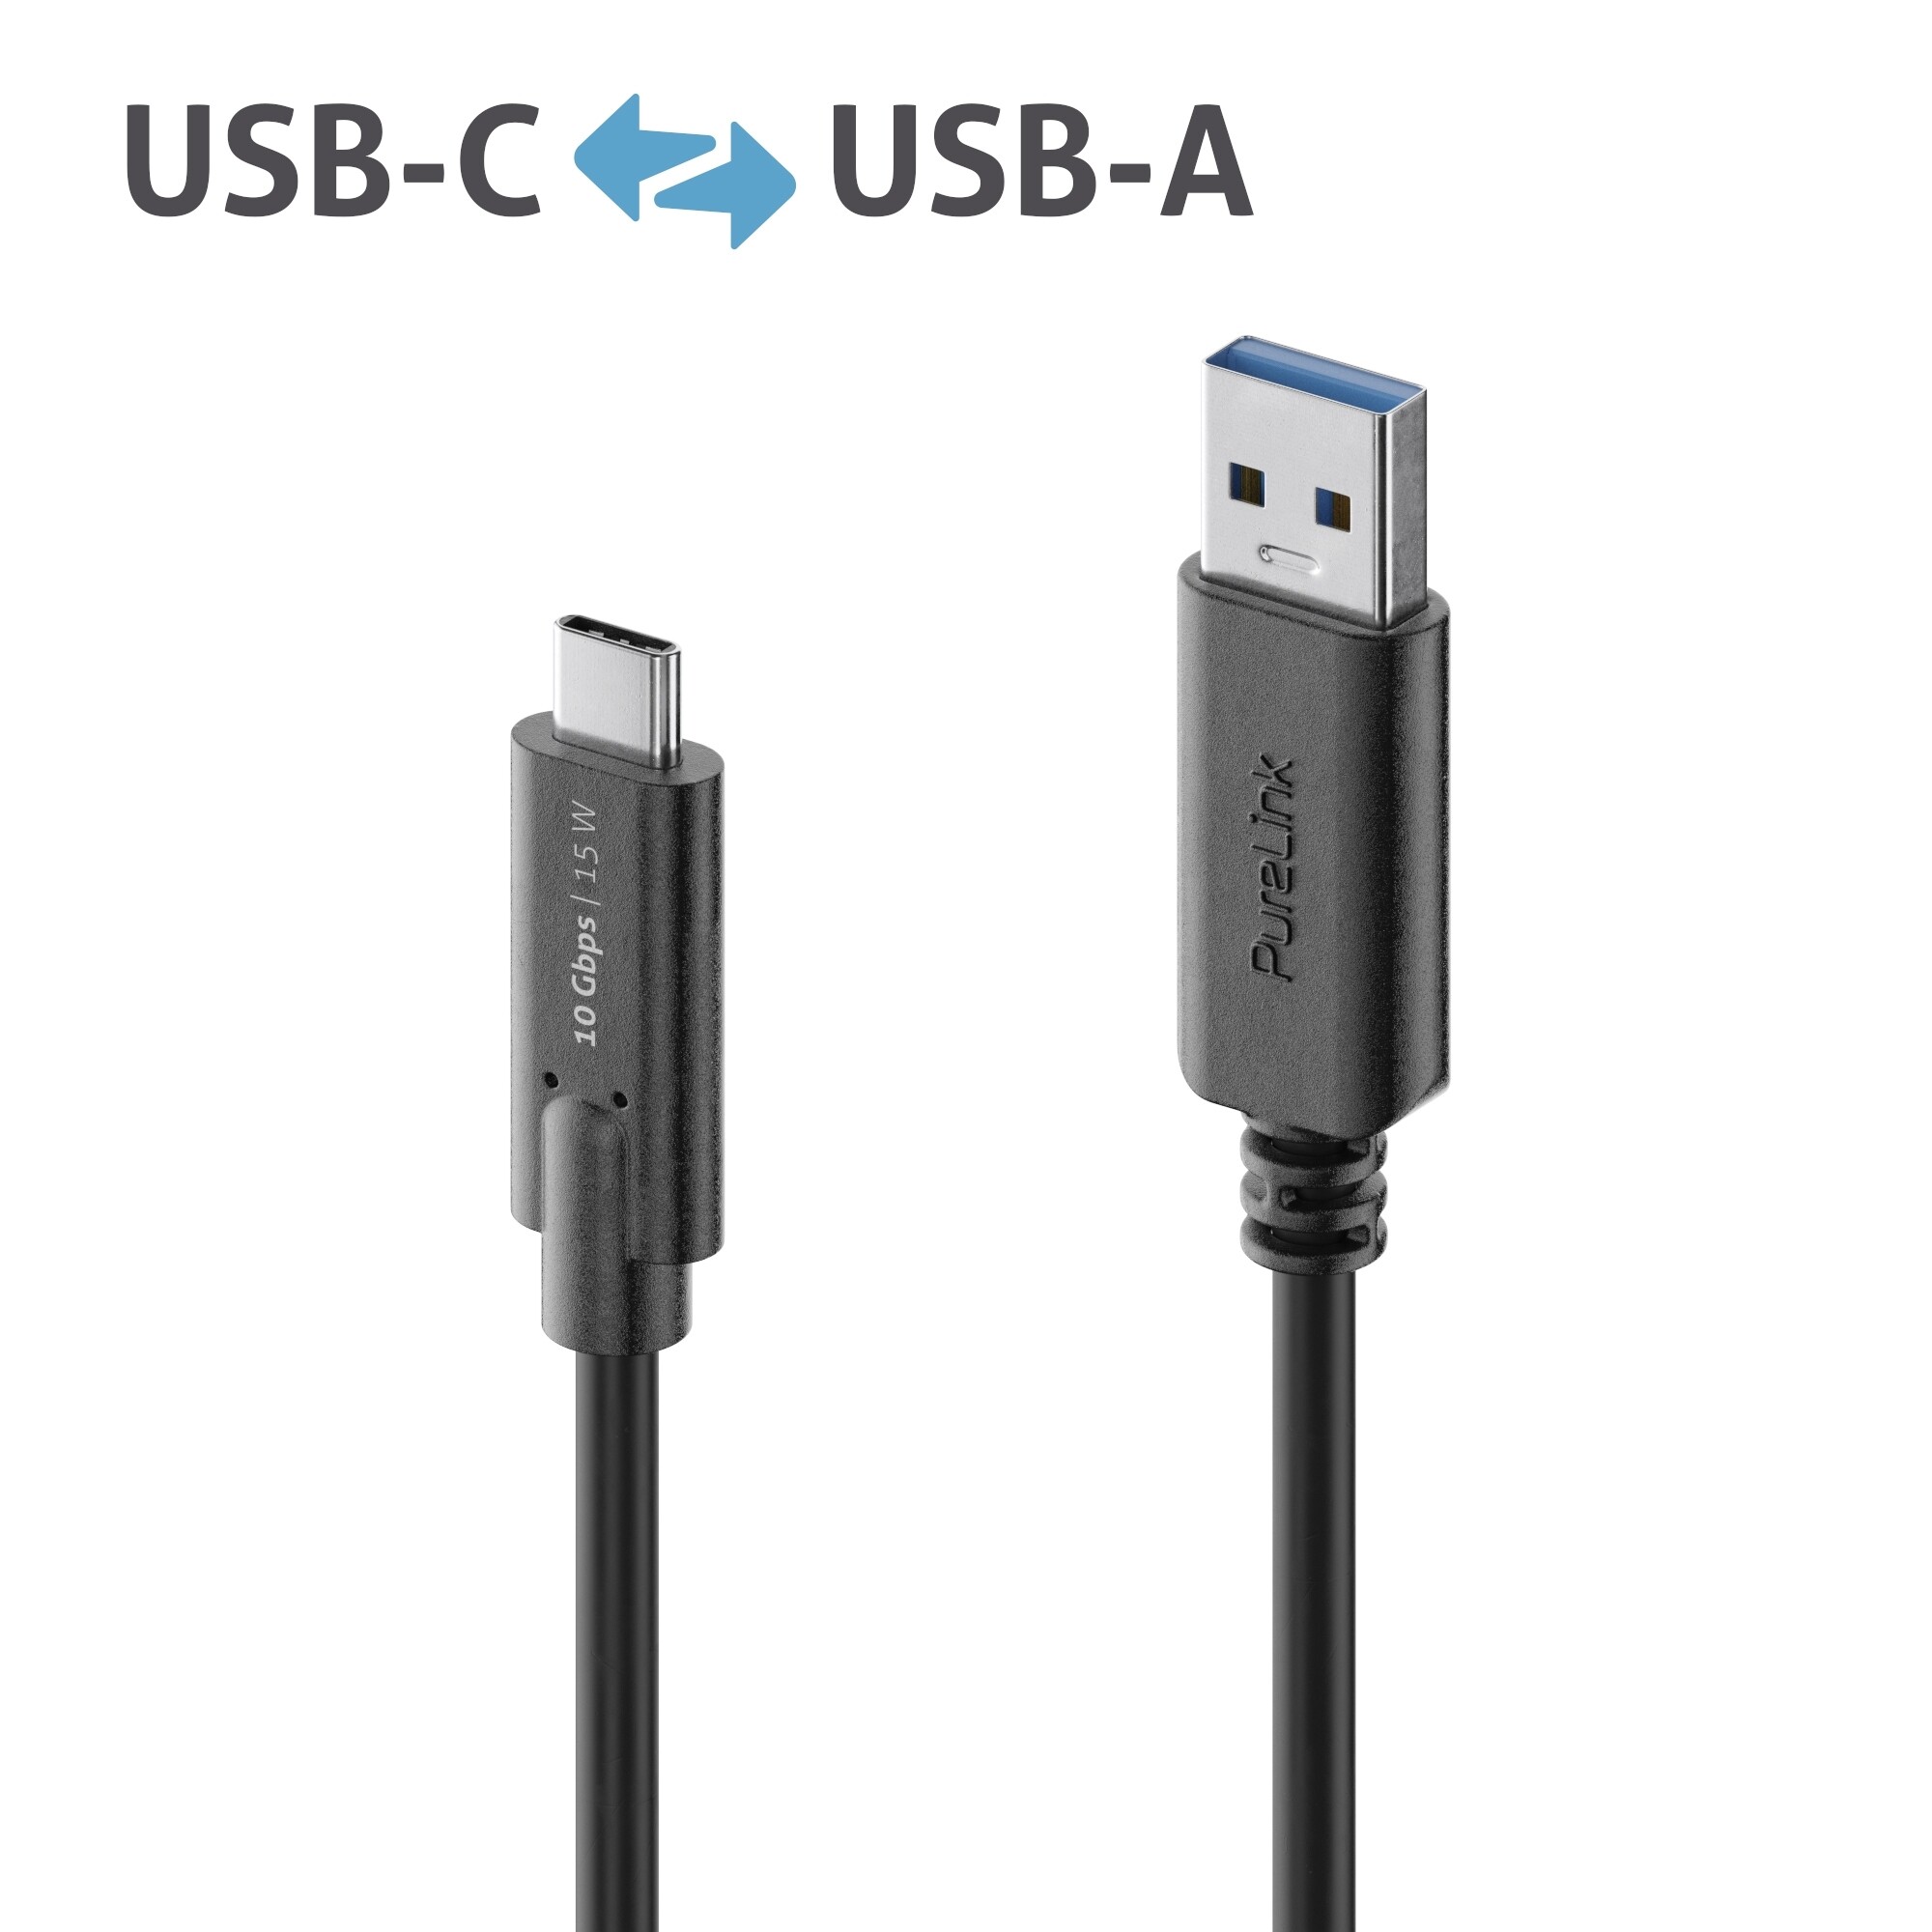 Purelink-IS2611-005-USB-C-auf-USB-A-Gen-2-Kabel-0-5m-schwarz